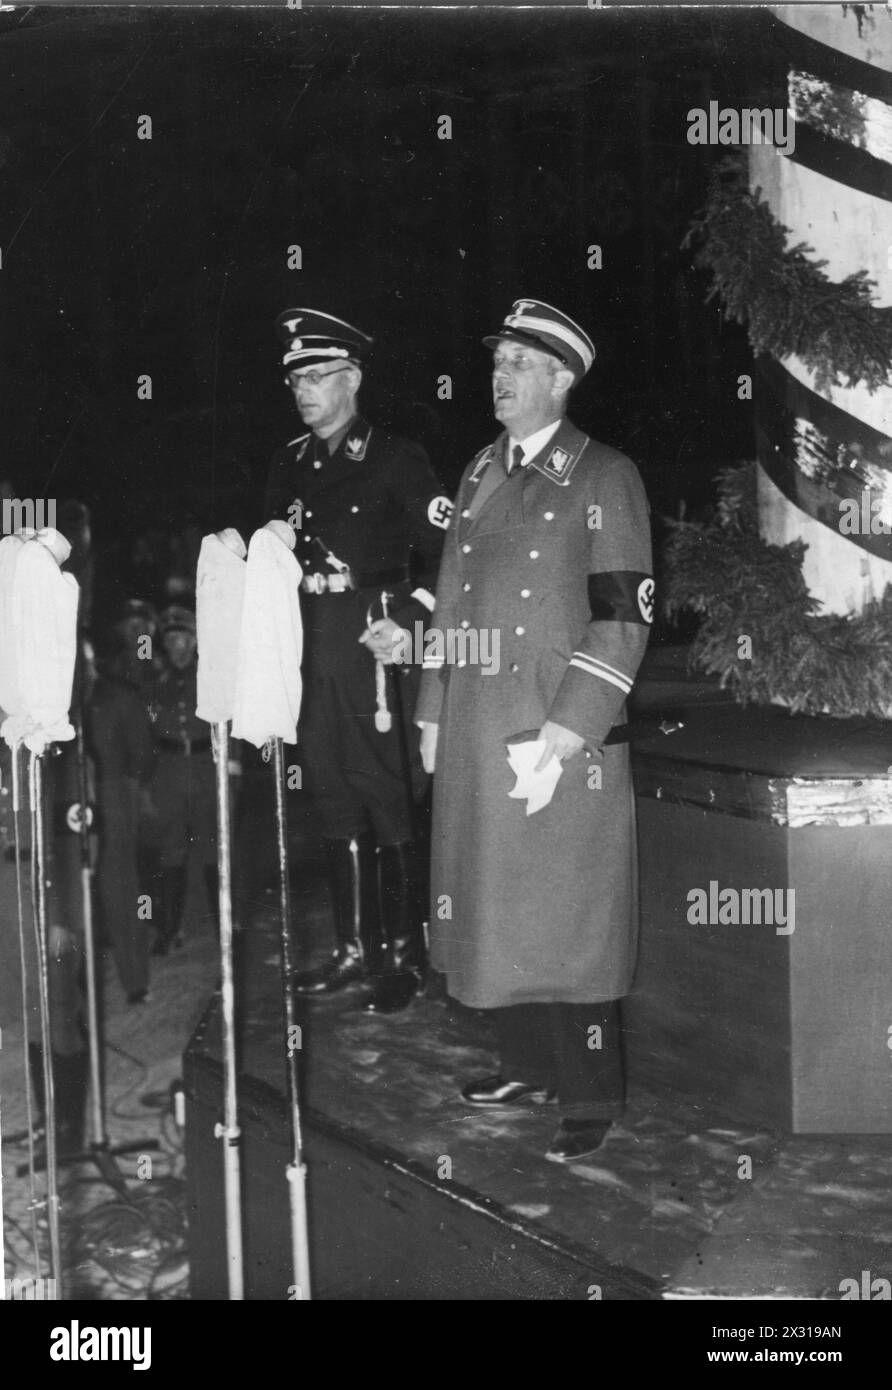 Seyss-Inquart, Arthur, 22.7.1892 - 16.10.1946, österreichischer Politiker (NSDAP), Reichsstatthalter von Österreich 1938 - 1939, REDAKTIONELL-USE-ONLY Stockfoto